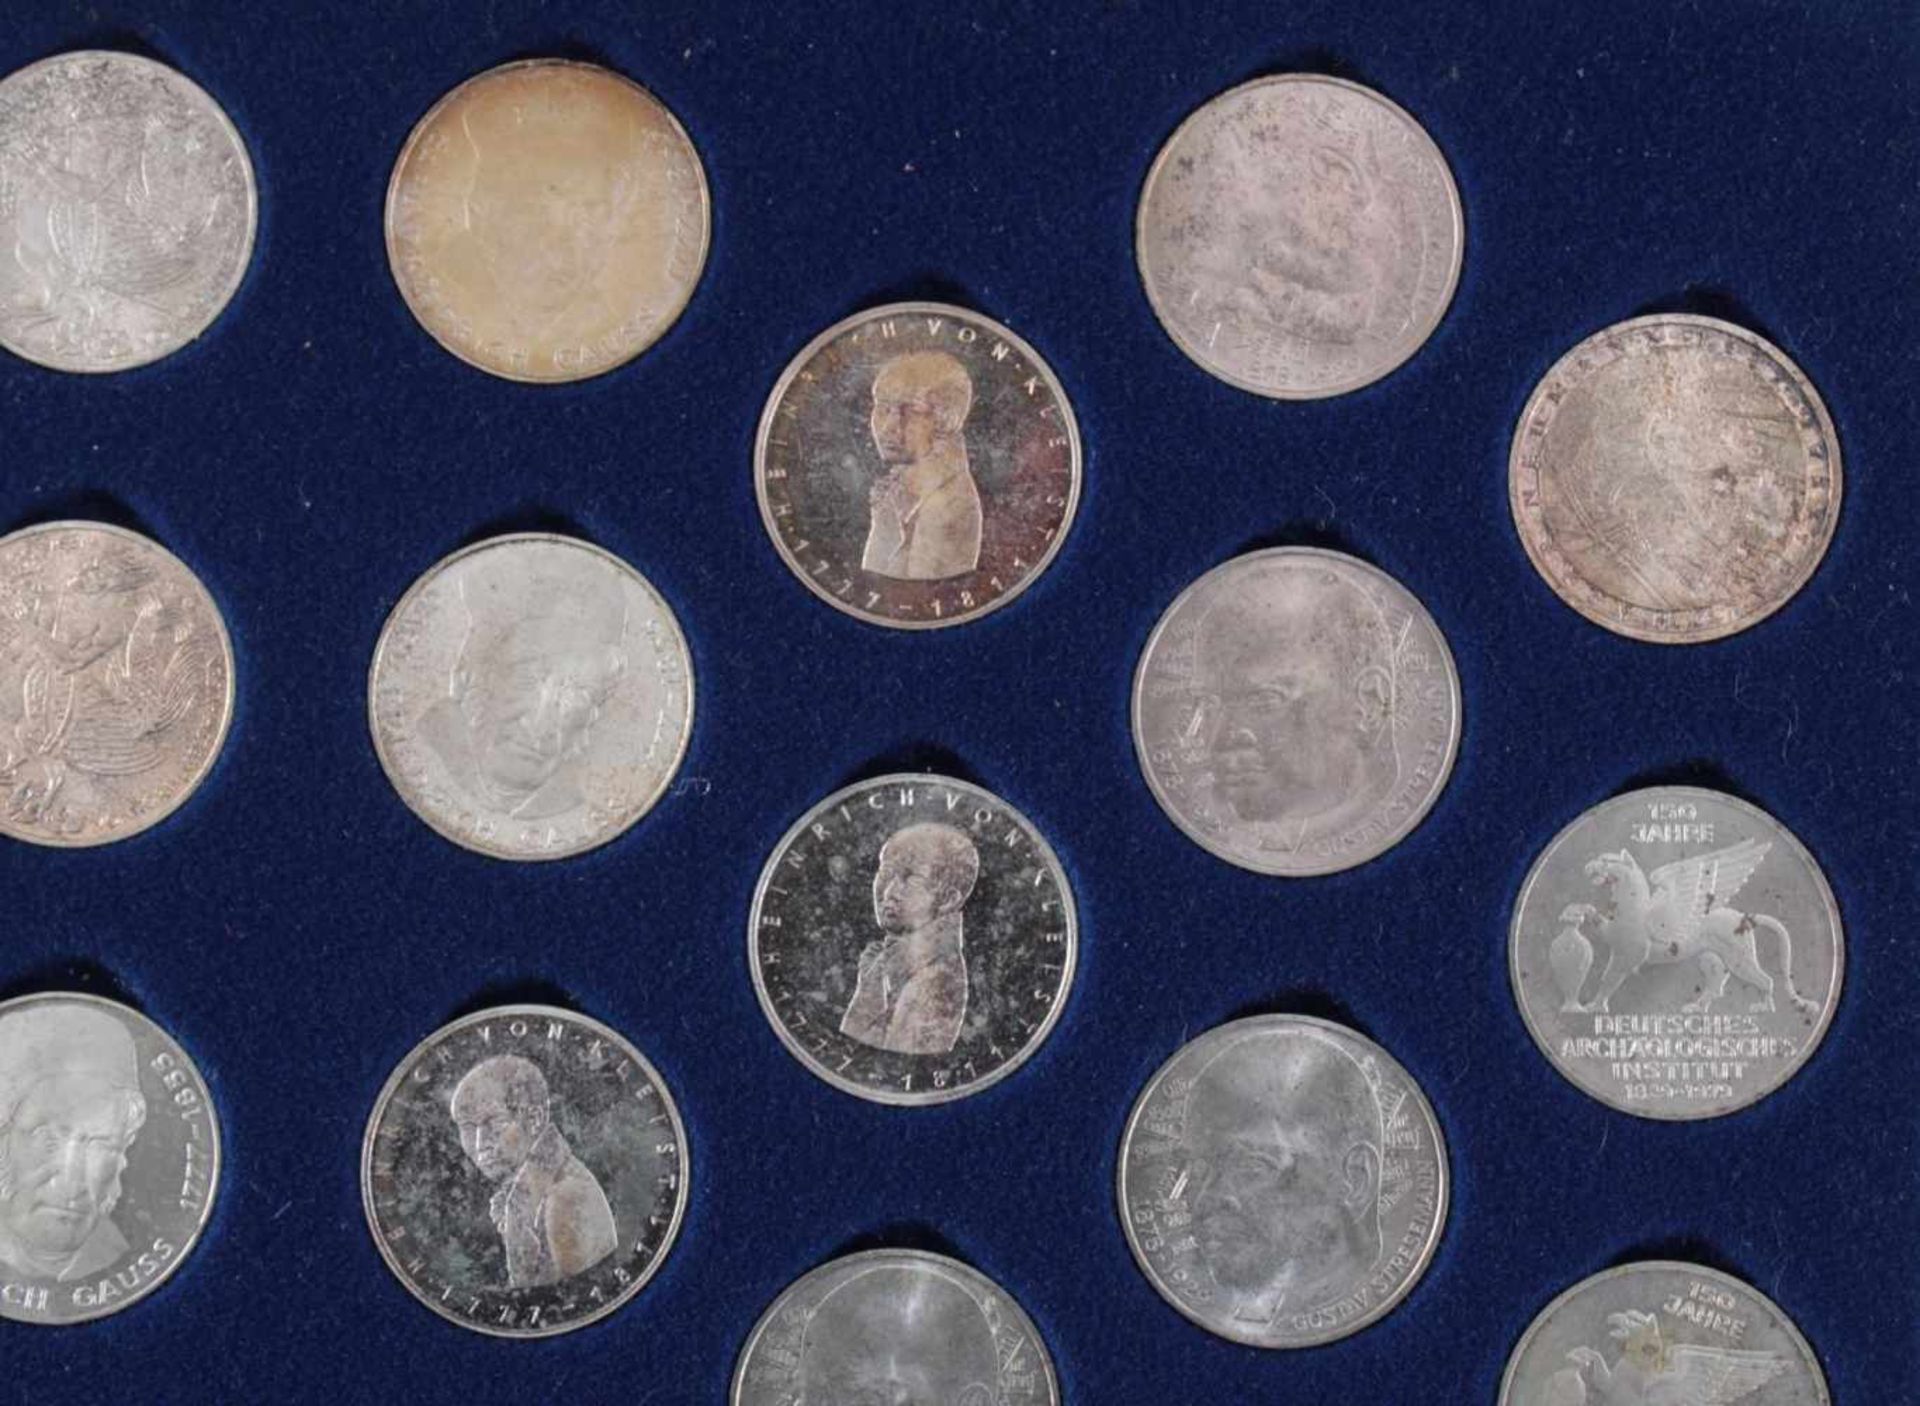 5 DM Sammlung Gedenkmünzen von 1951 bis 197470 Münzen in original Sammelbox - Bild 3 aus 7